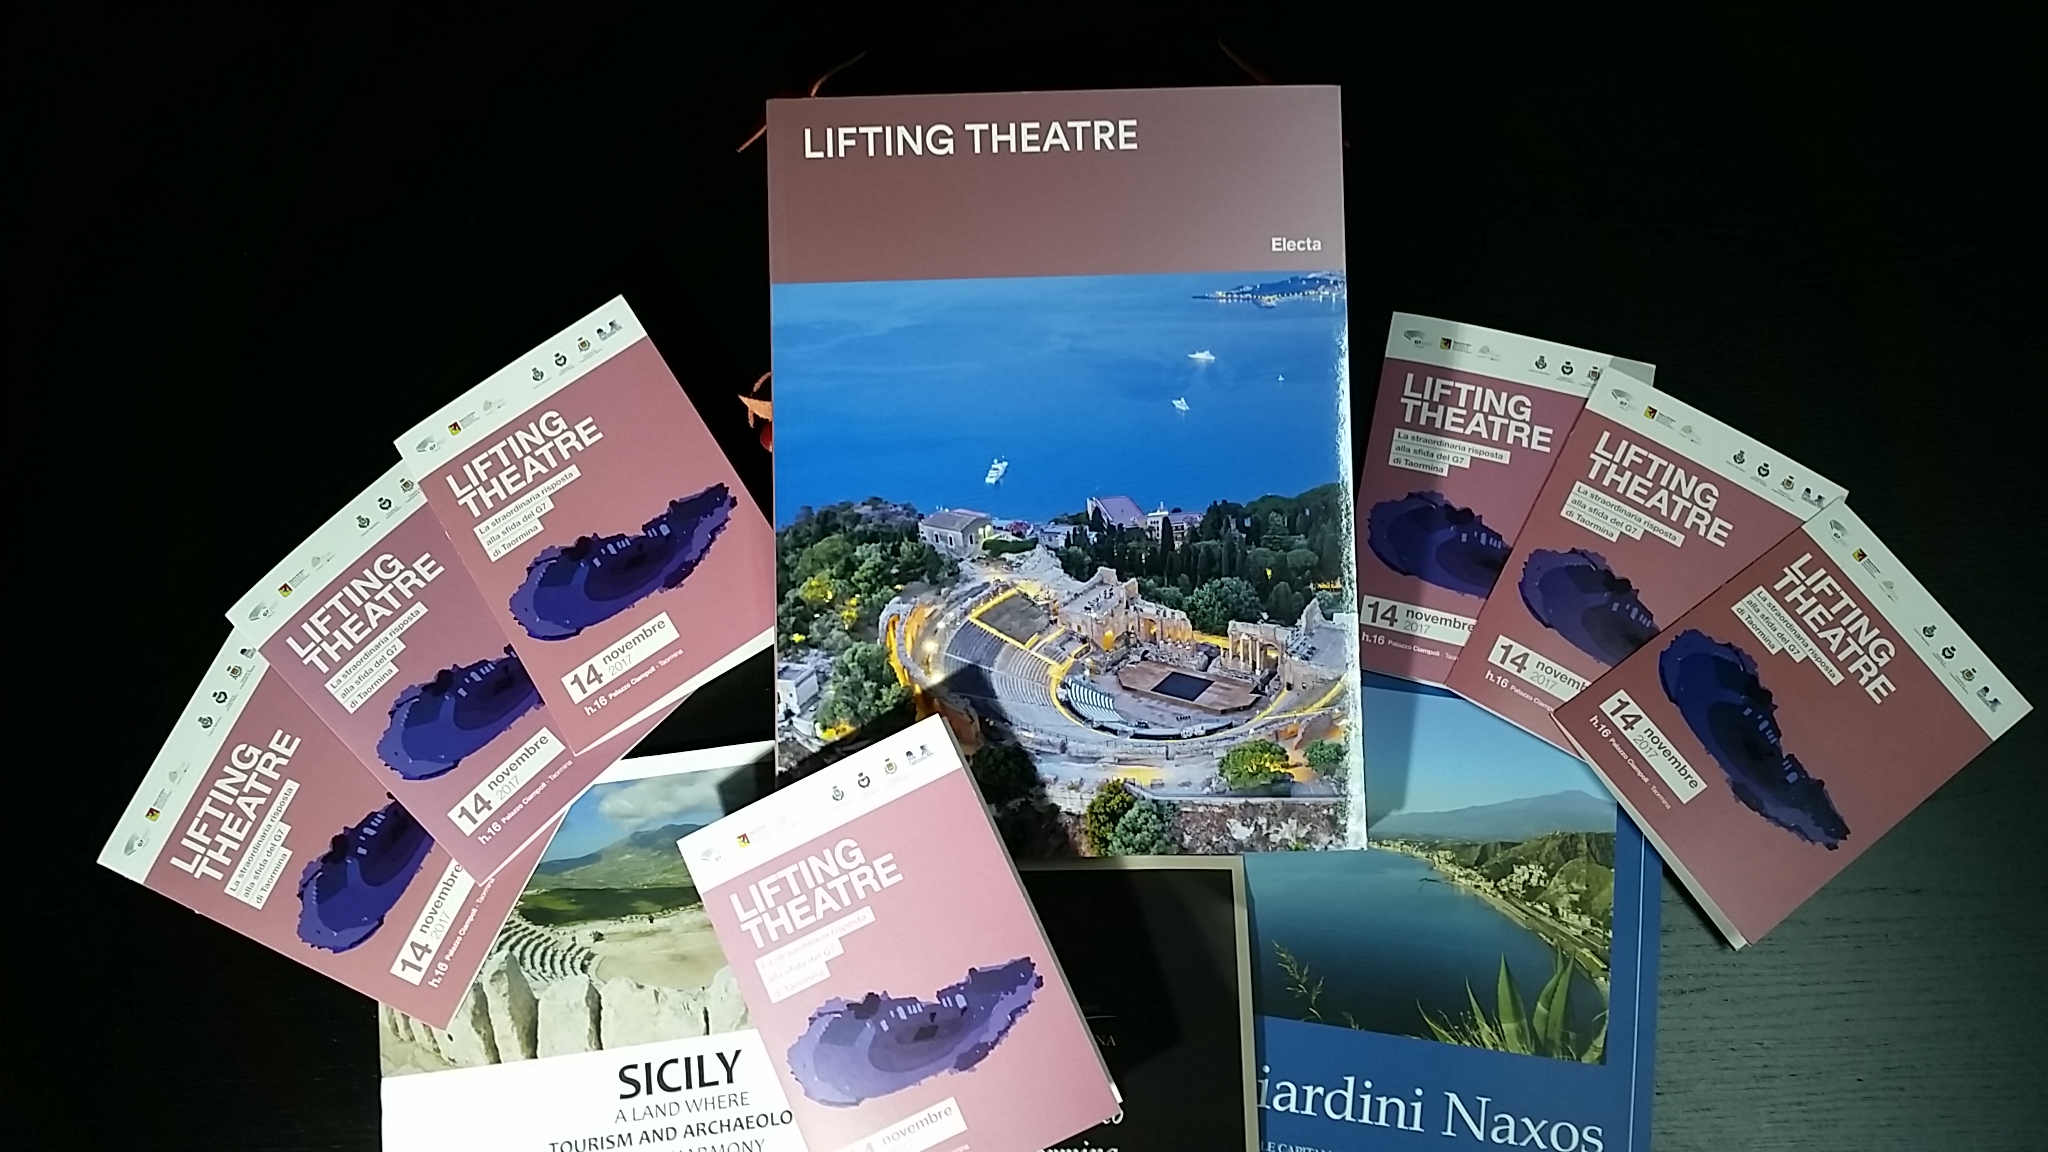 Il Parco Archeologico Naxos-Taormina presenta volume “Lifting Theatre” risposta alla sfida del G7 di Taormina